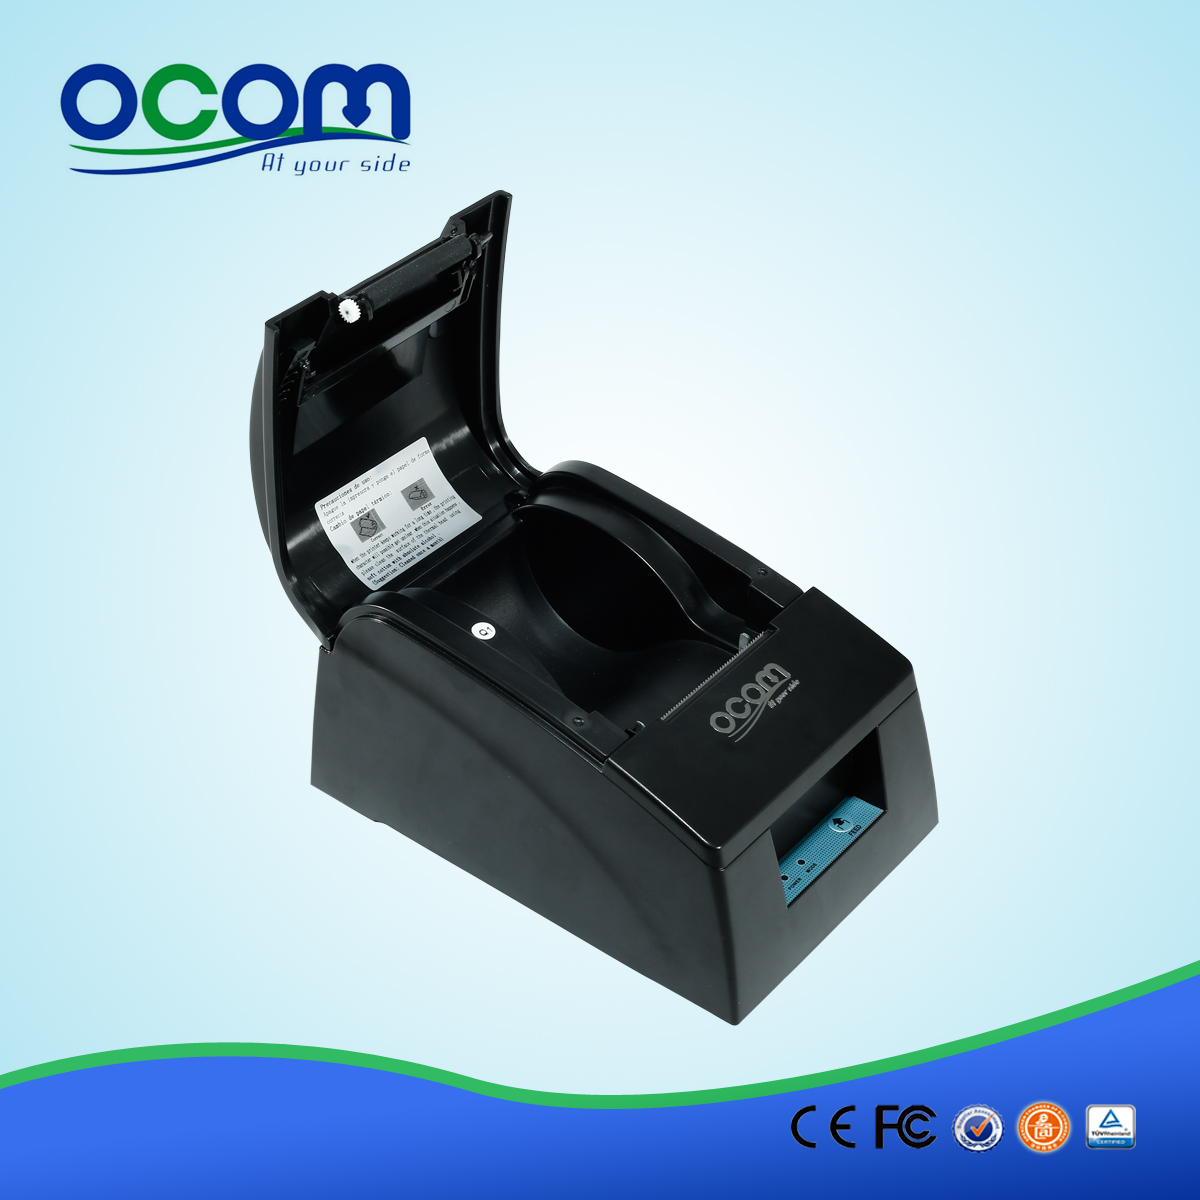 58 millimetri android termica per ricevute printer-- OCPP-586